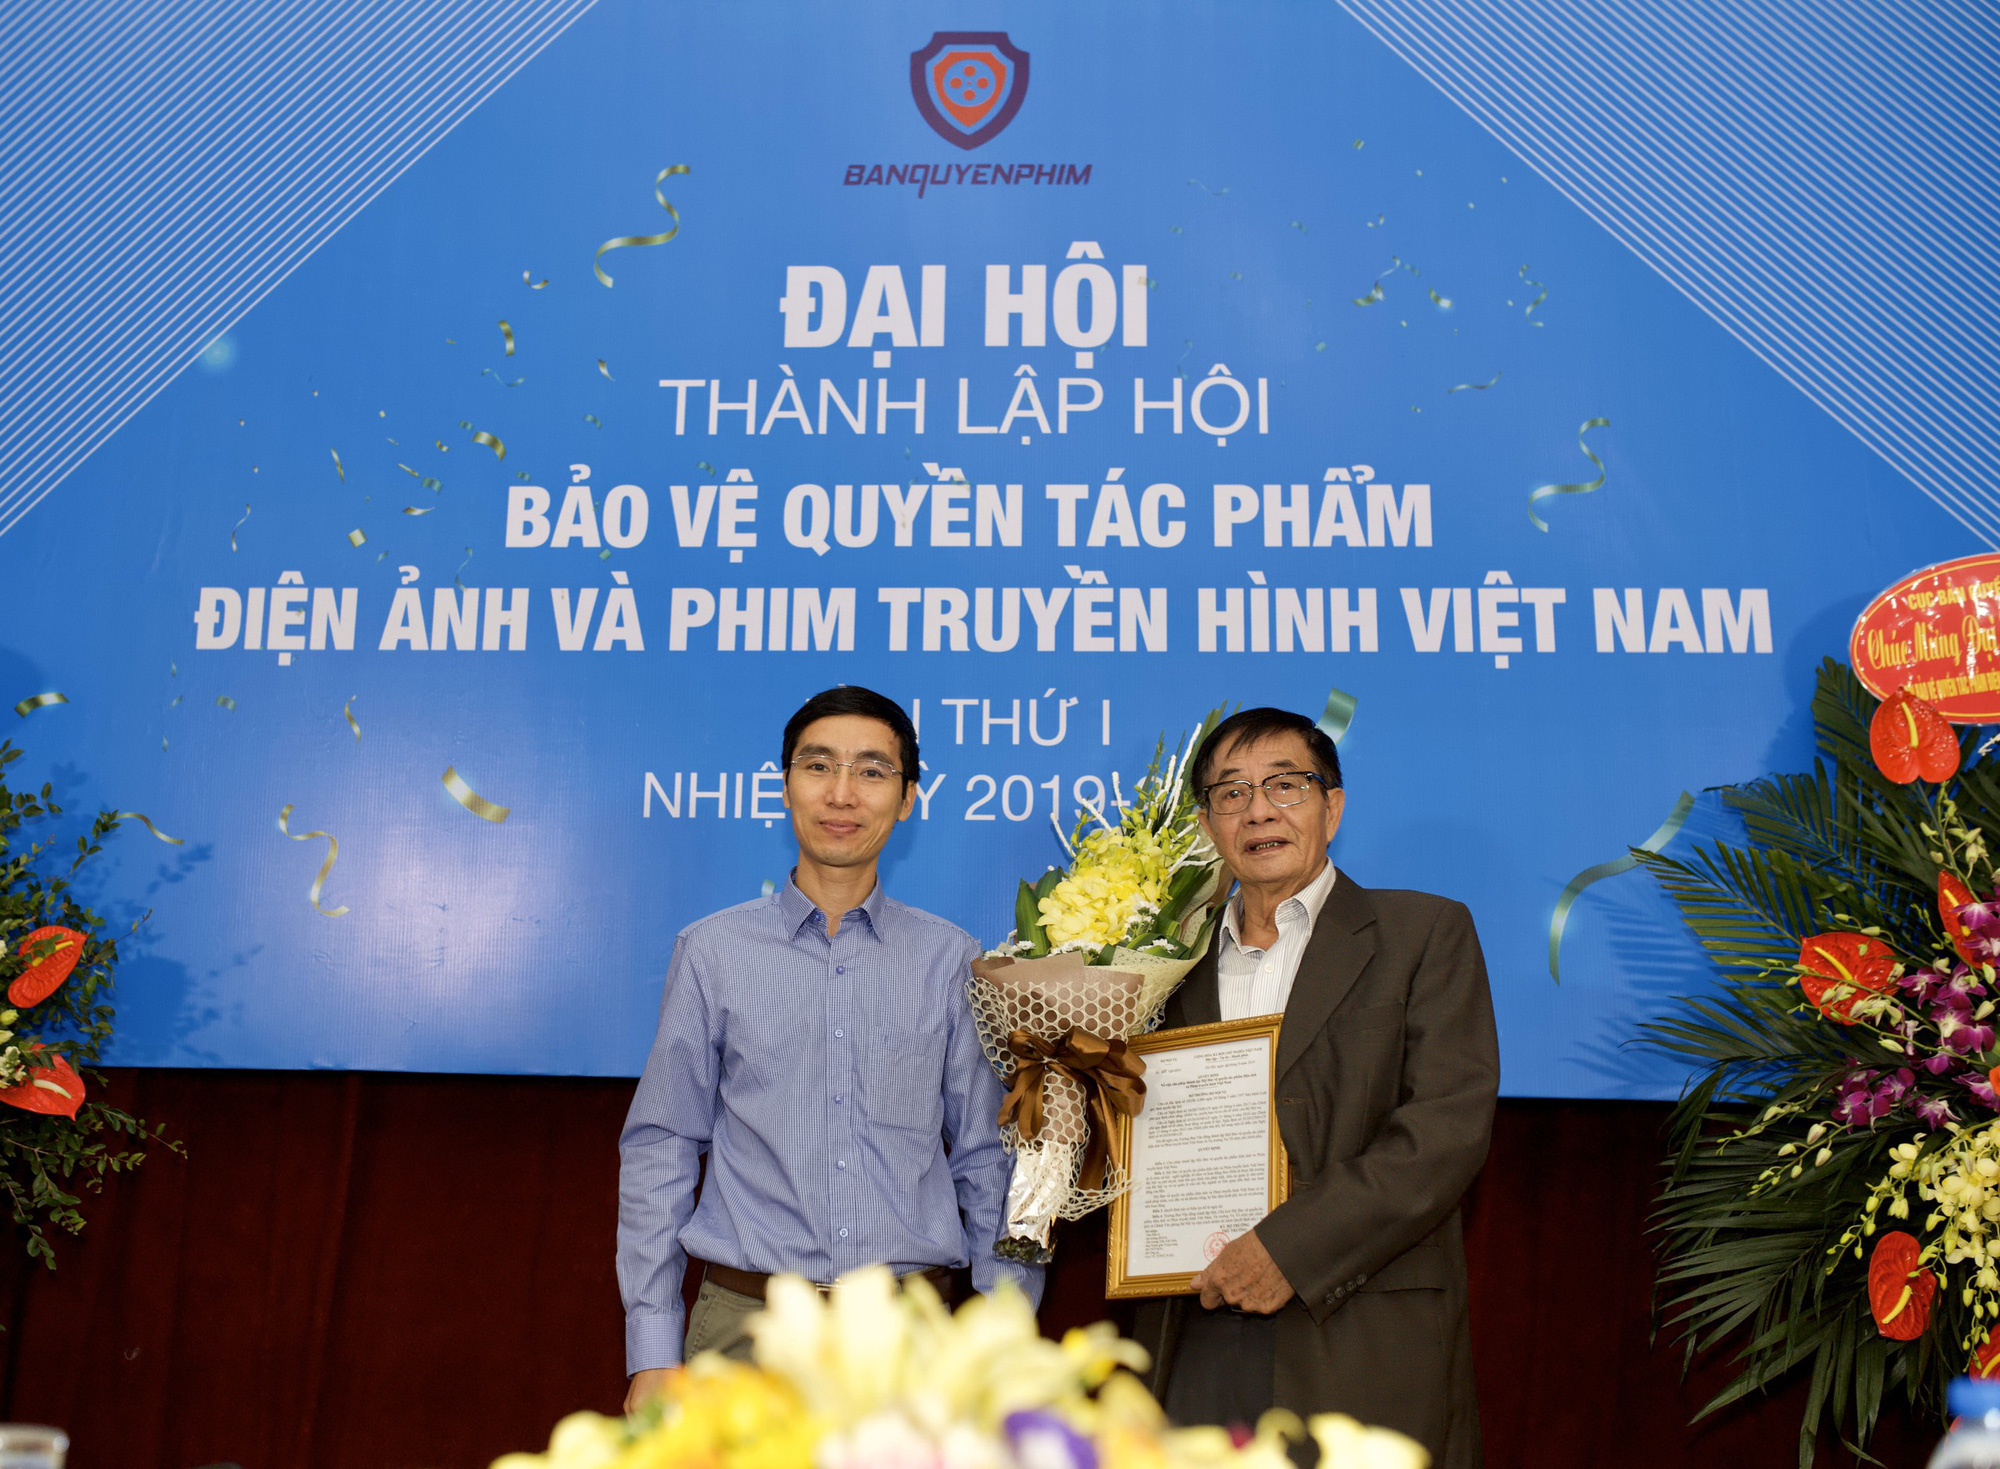 Thành lập Hội Bảo vệ quyền tác phẩm điện ảnh và phim truyền hình Việt Nam - Ảnh 3.